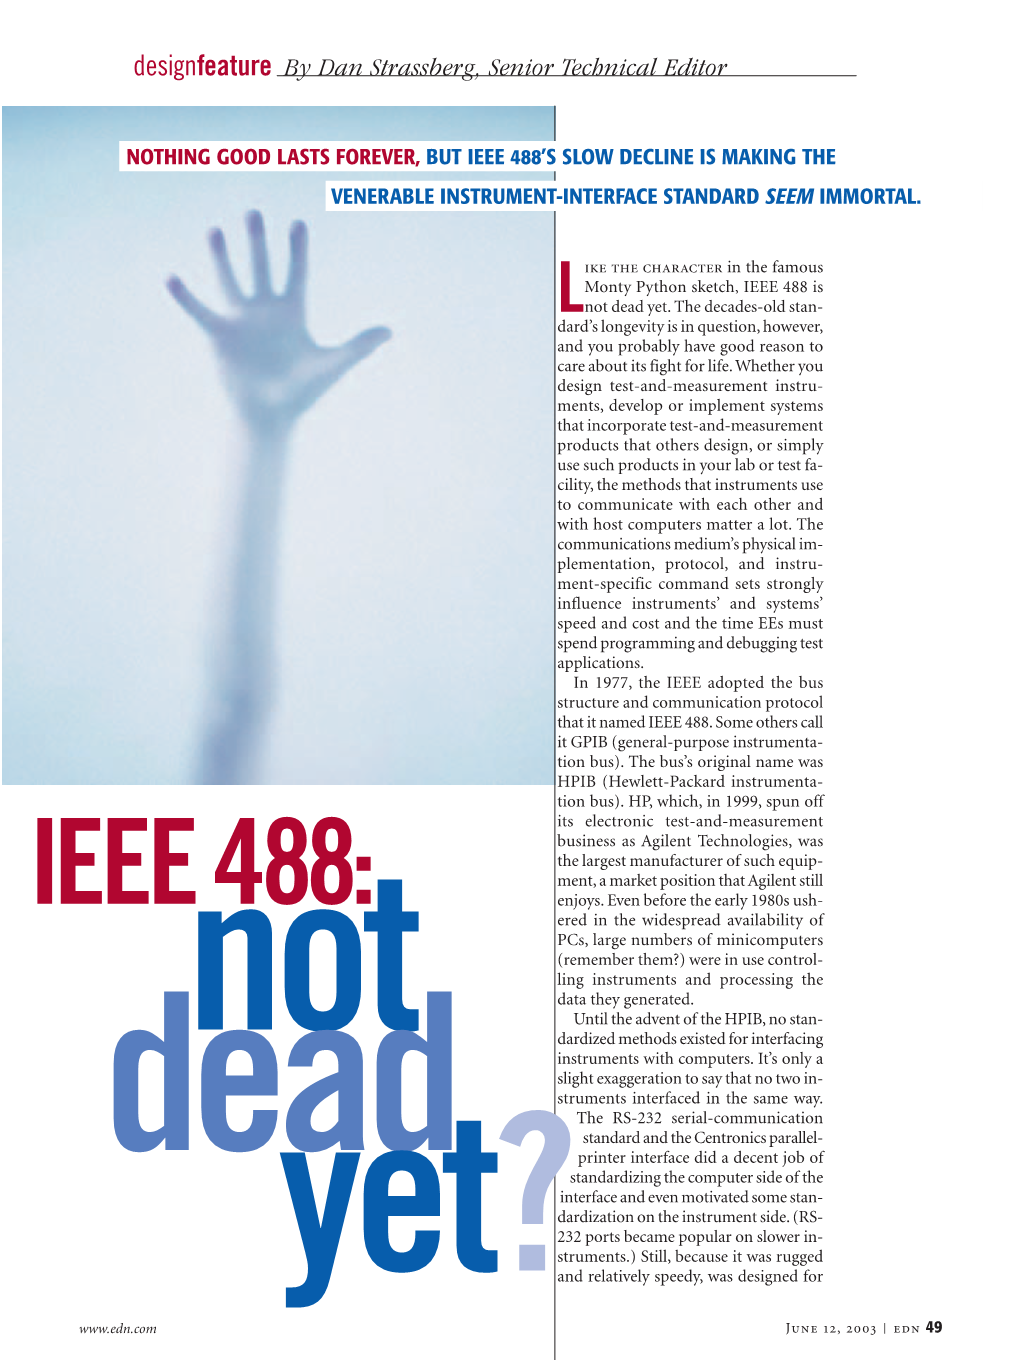 IEEE488: Not Dead Yet?